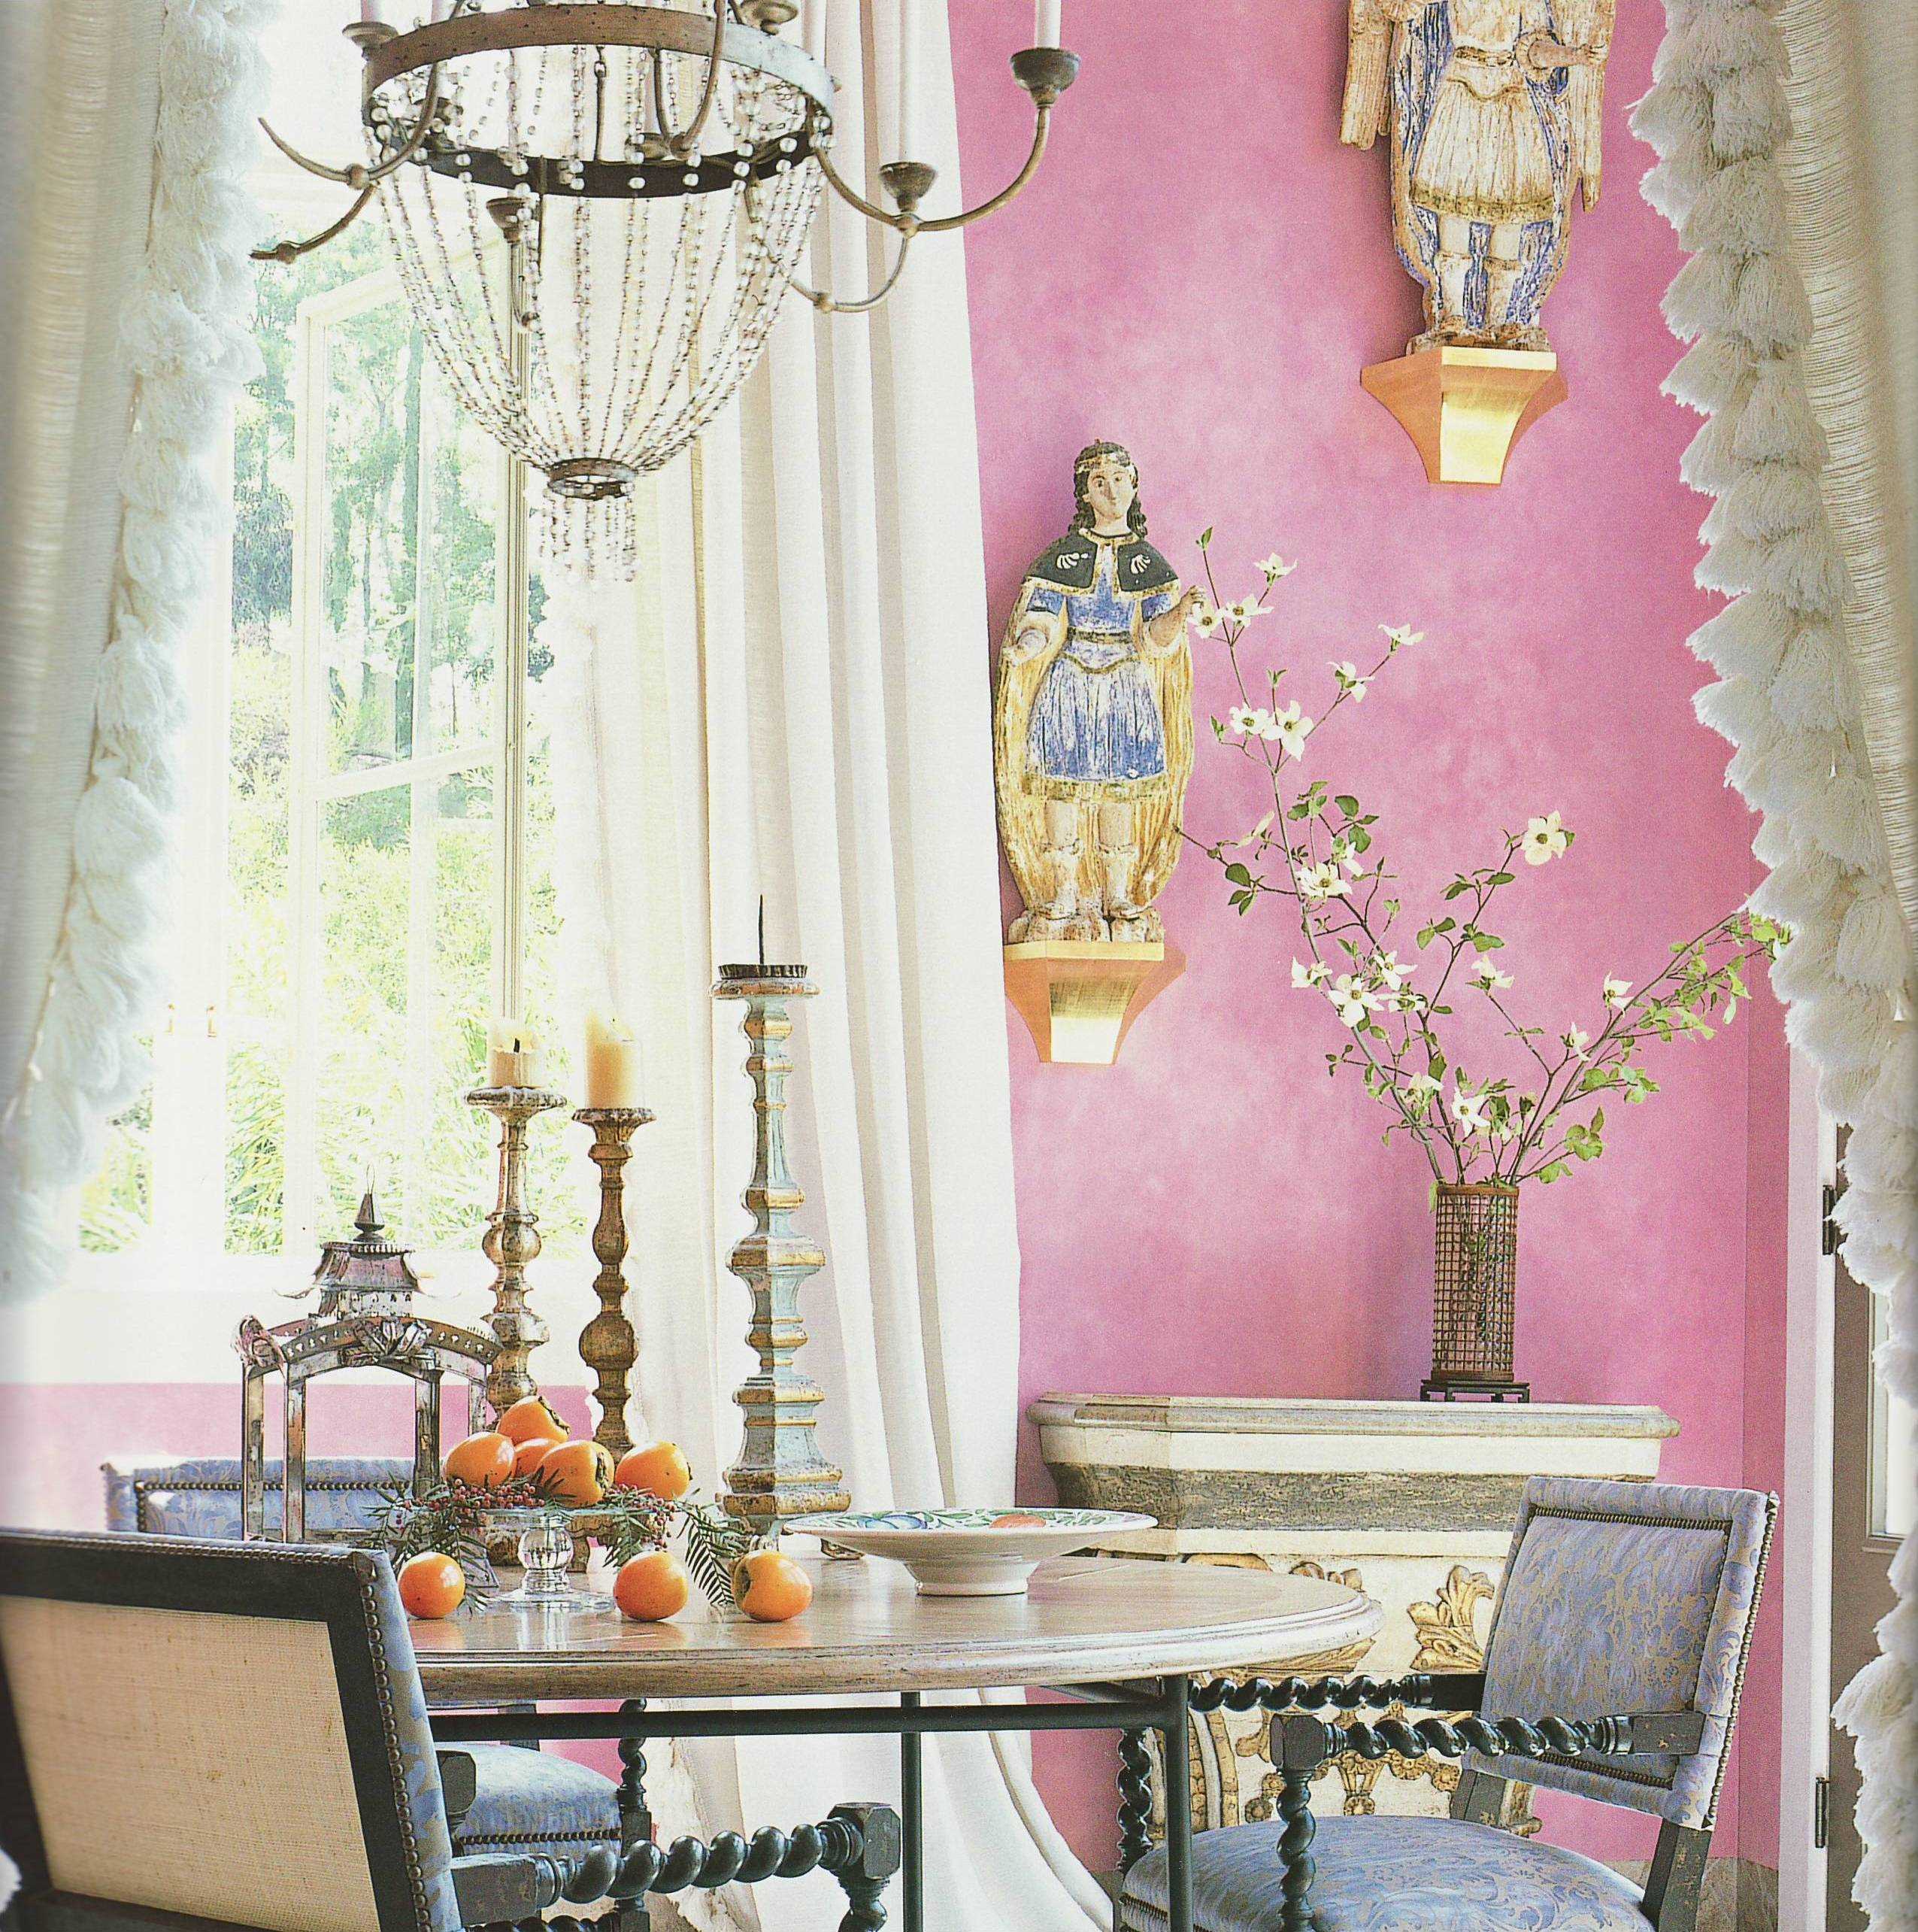 příklad použití růžové ve světlém interiéru bytu